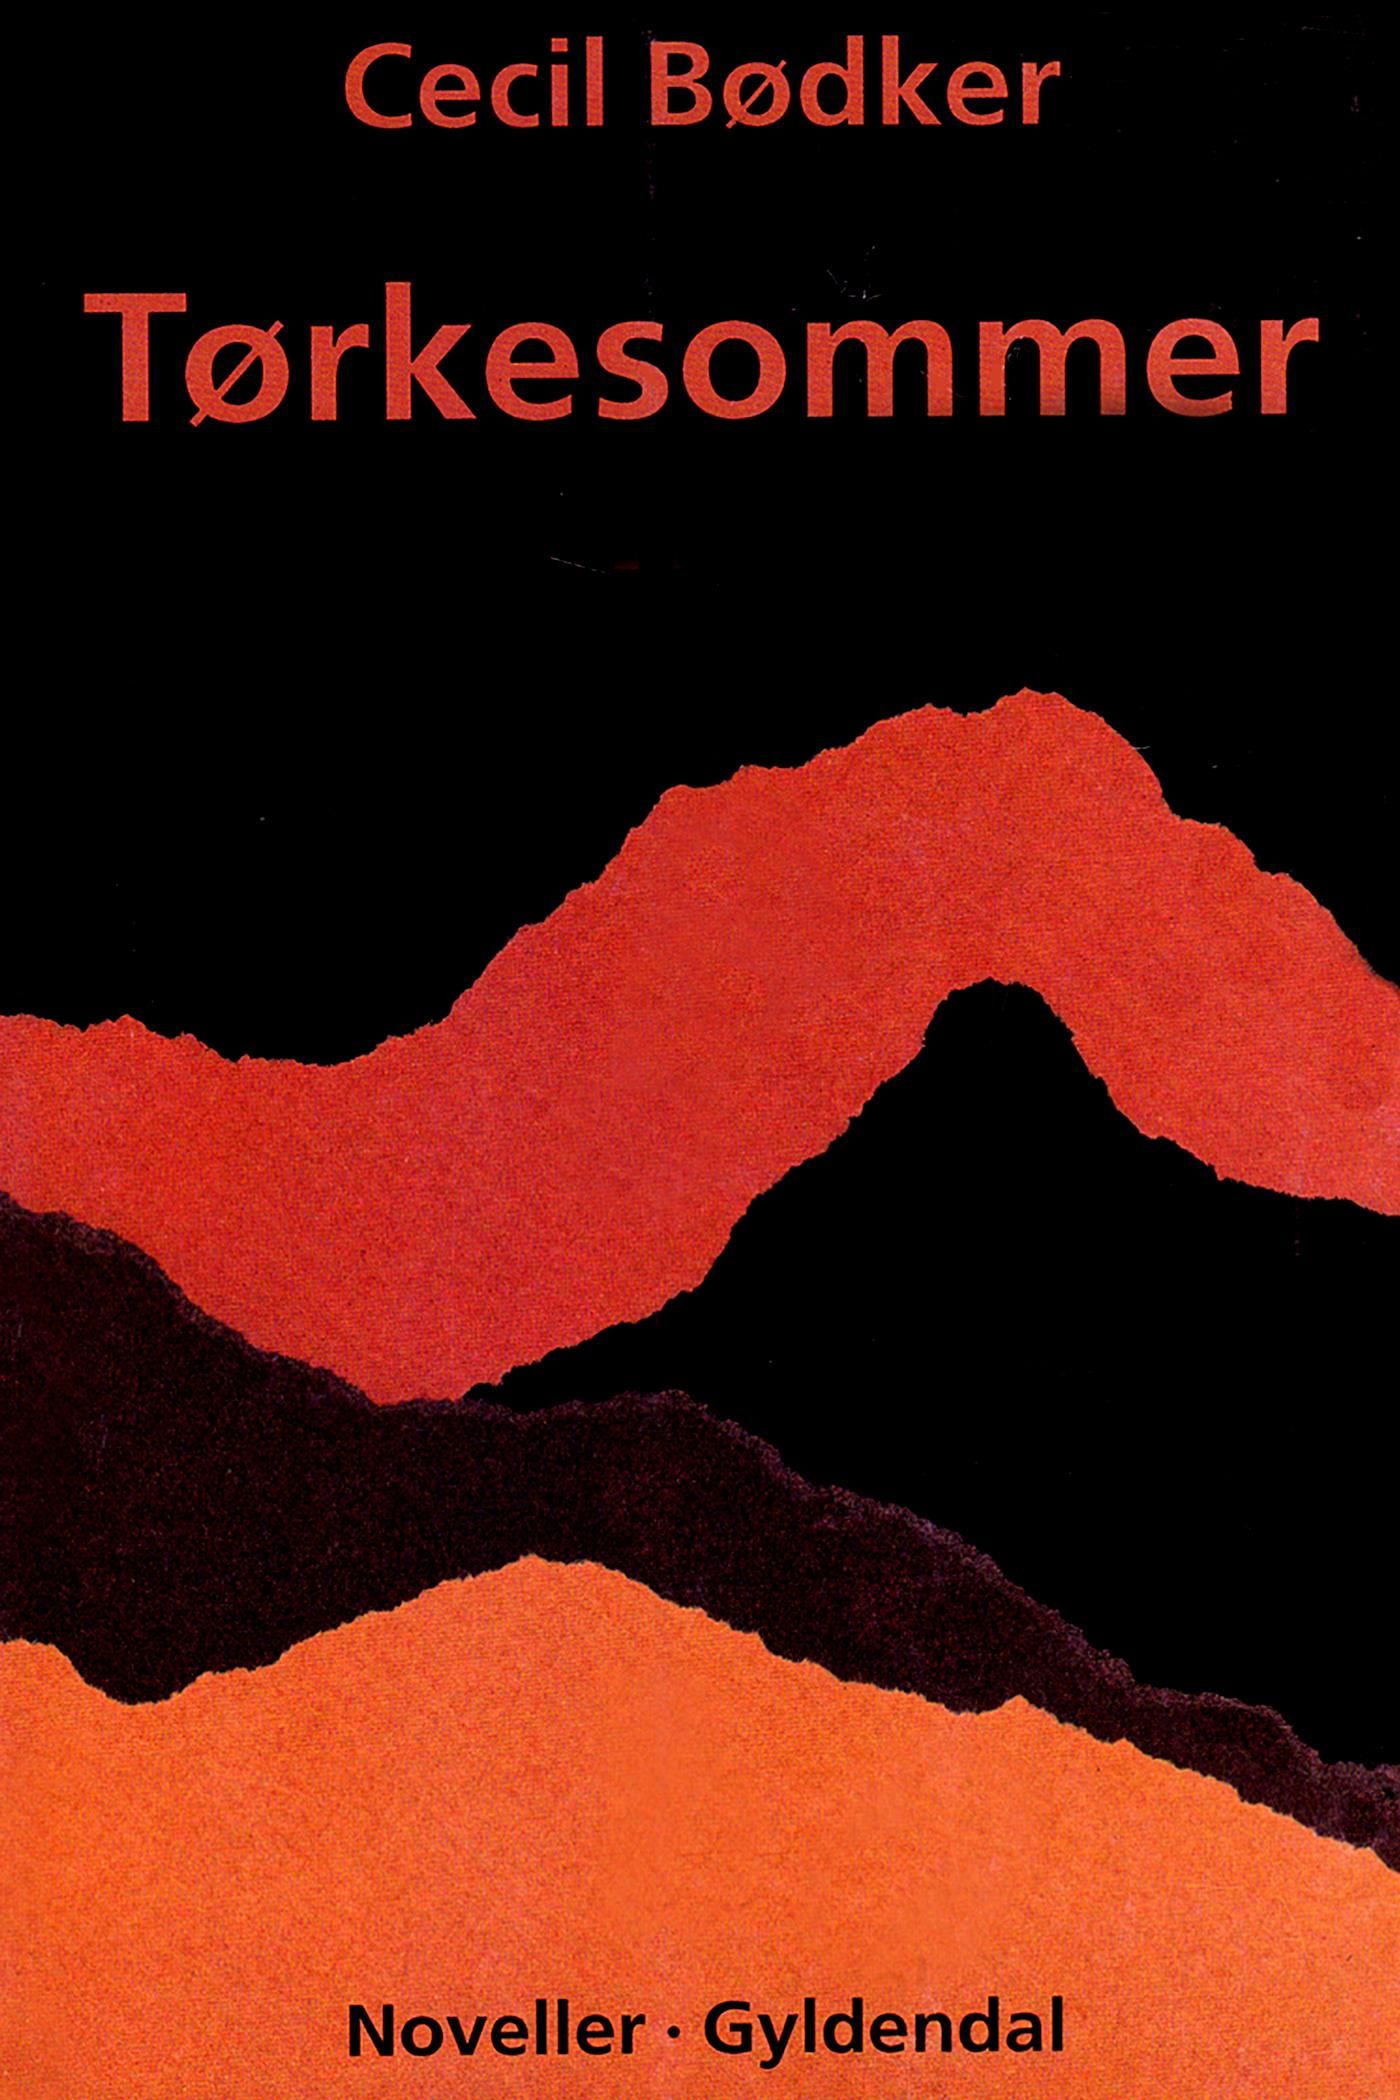 Tørkesommer, eBook by Cecil Bødker